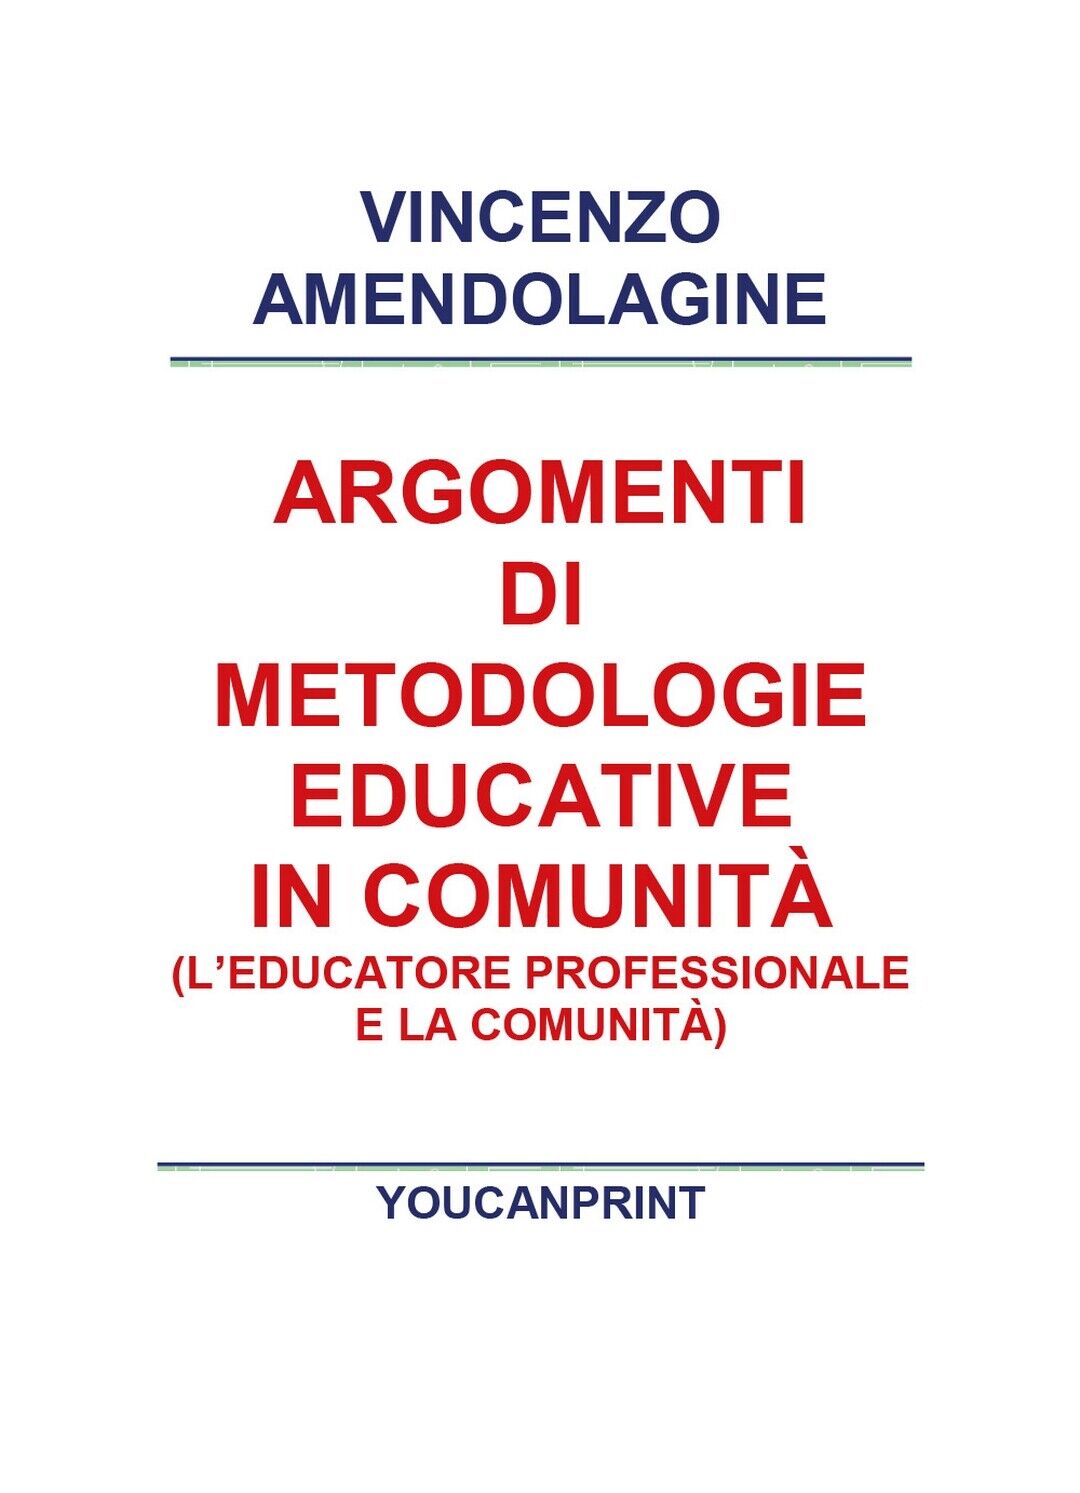 Argomenti di metodologie educative in comunit?  di Vincenzo Amendolagine,  2018